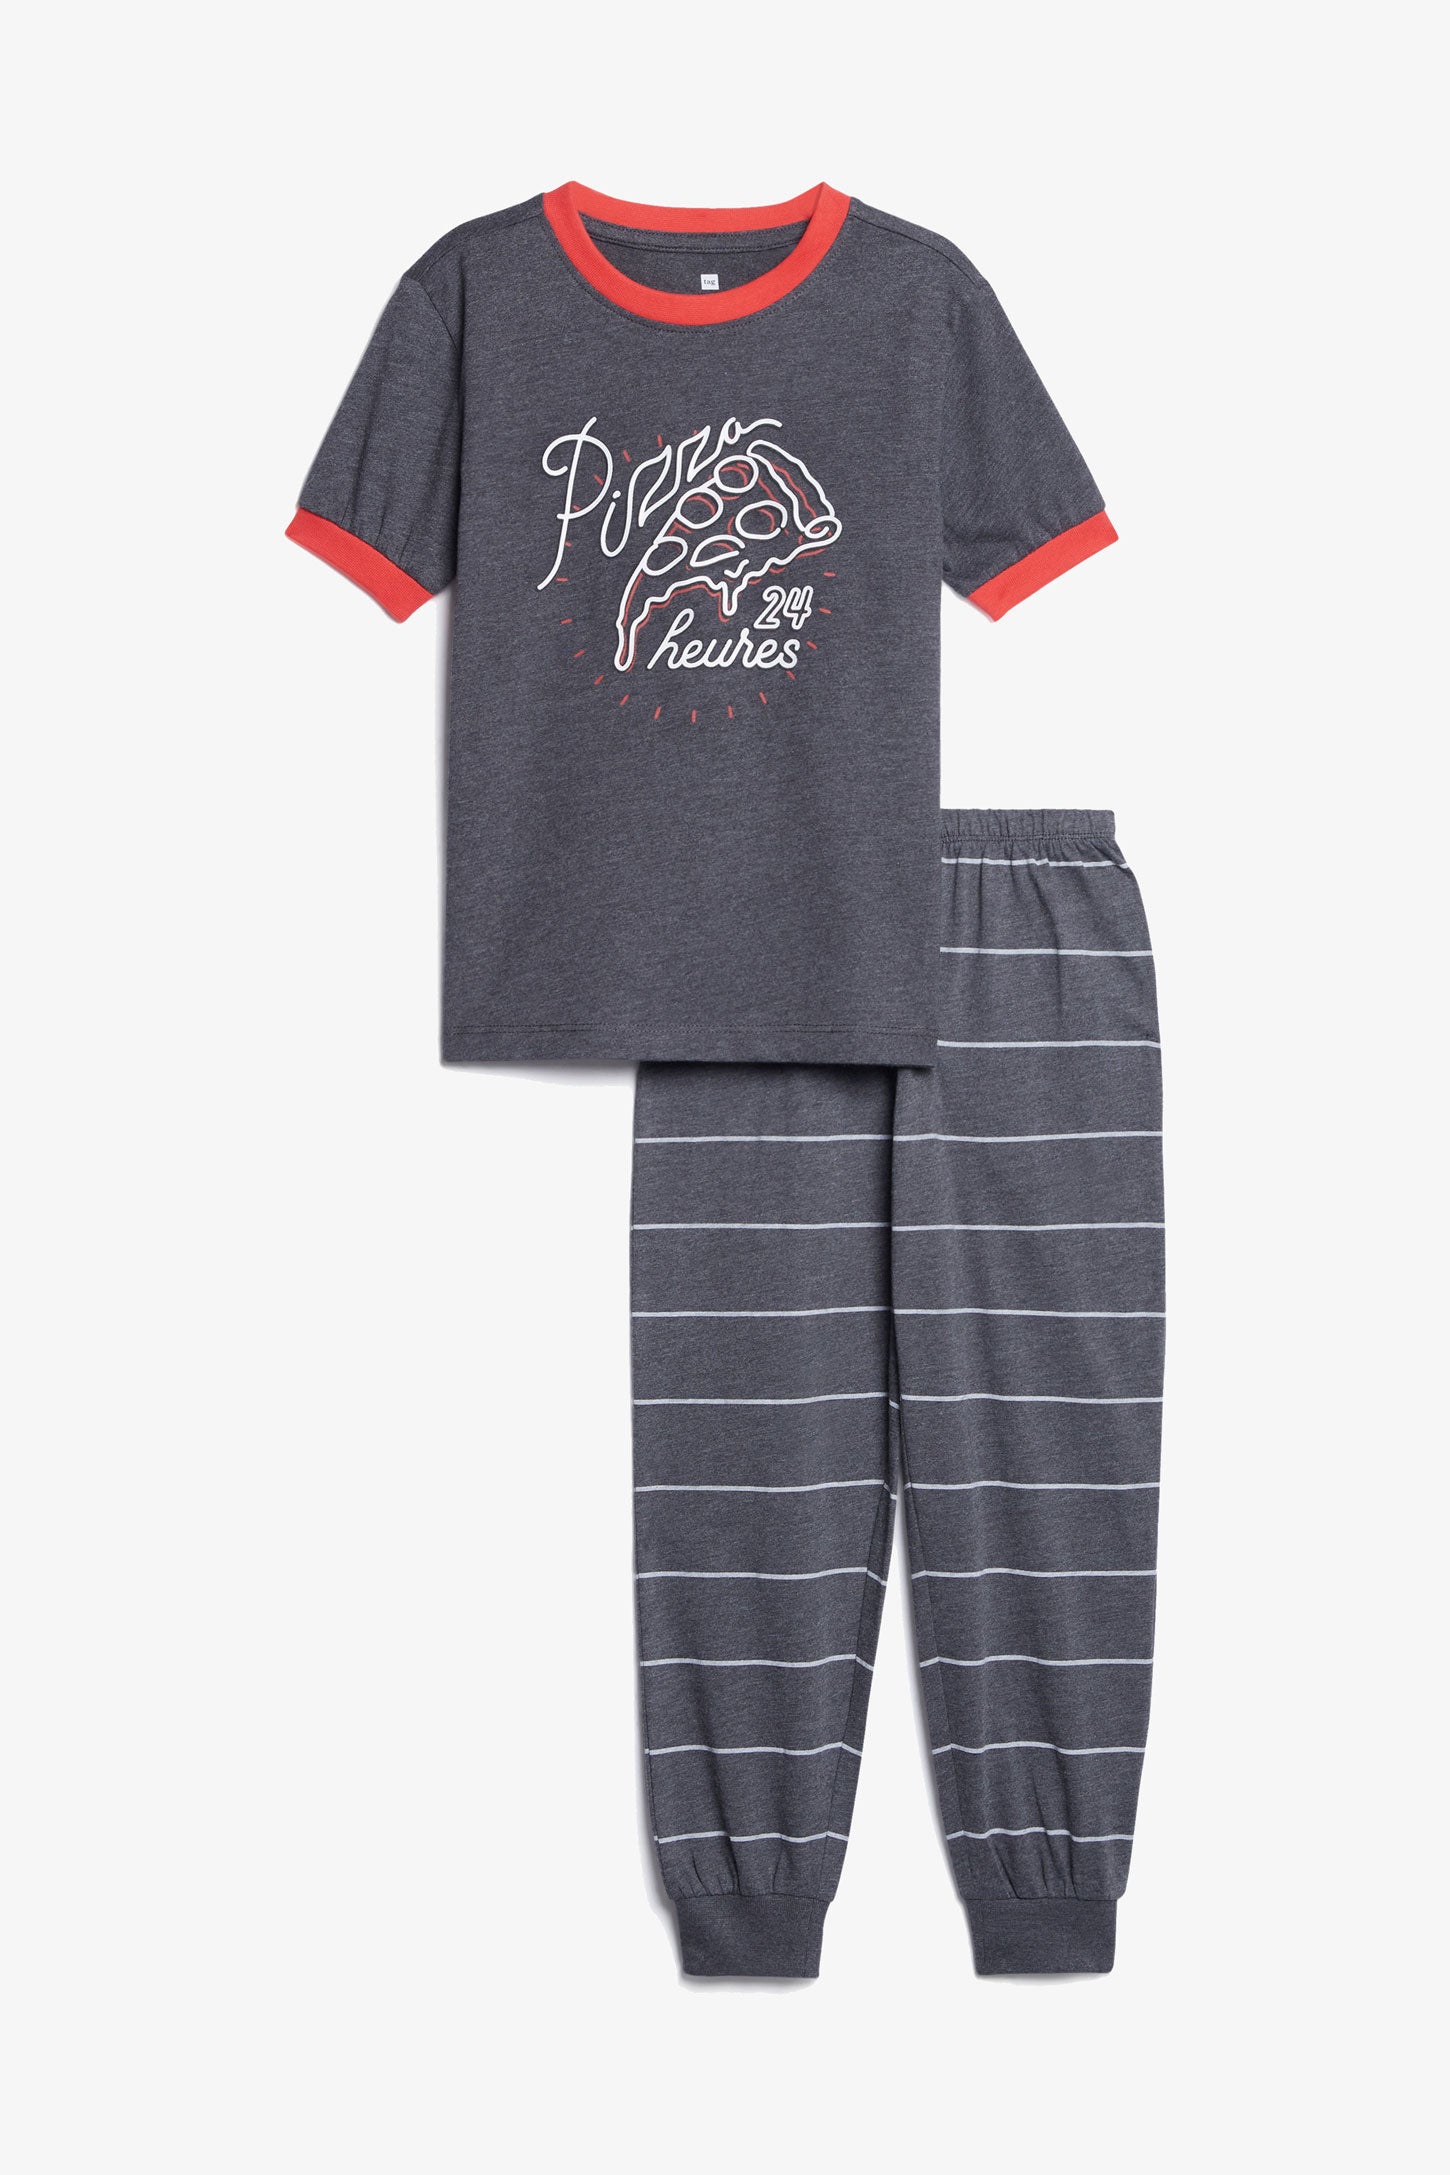 Pyjama 2-pièces en coton, 2/35$ - Enfant garçon && CHARBON MIXTE